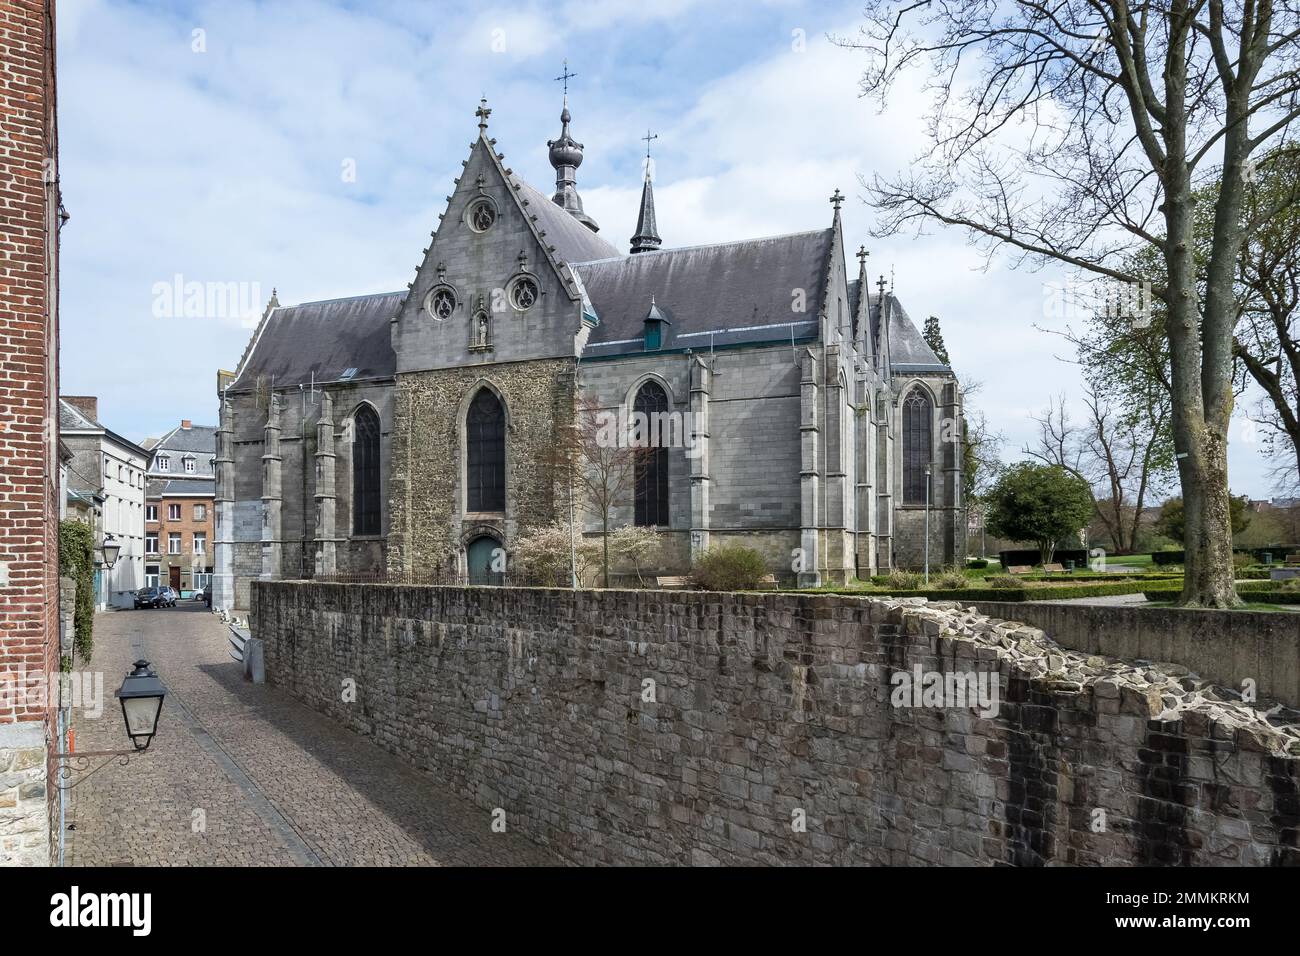 Particolare architettonico dell'edificio della Chiesa Collegiata di Saint-Ursler, situato a Binche, nella provincia belga dell'Hainaut. L'edificio in gran parte gotico Foto Stock